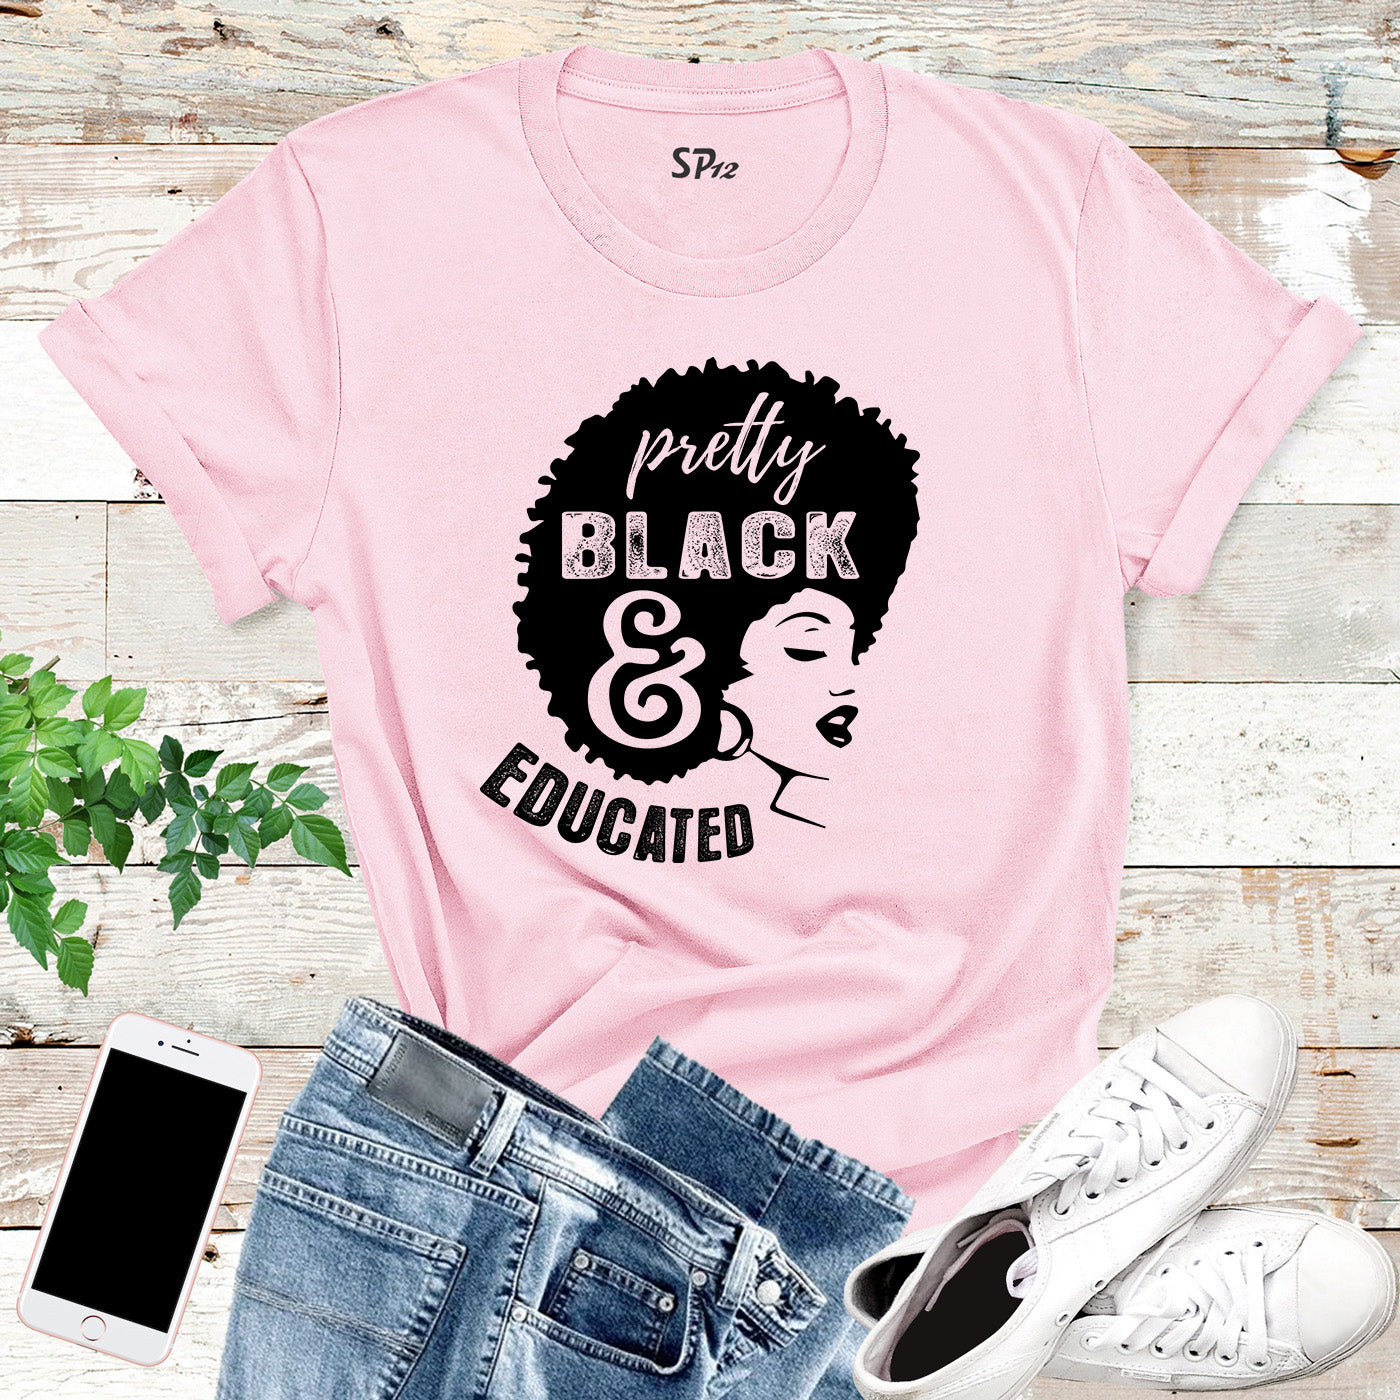 Black Girl Power T Shirt